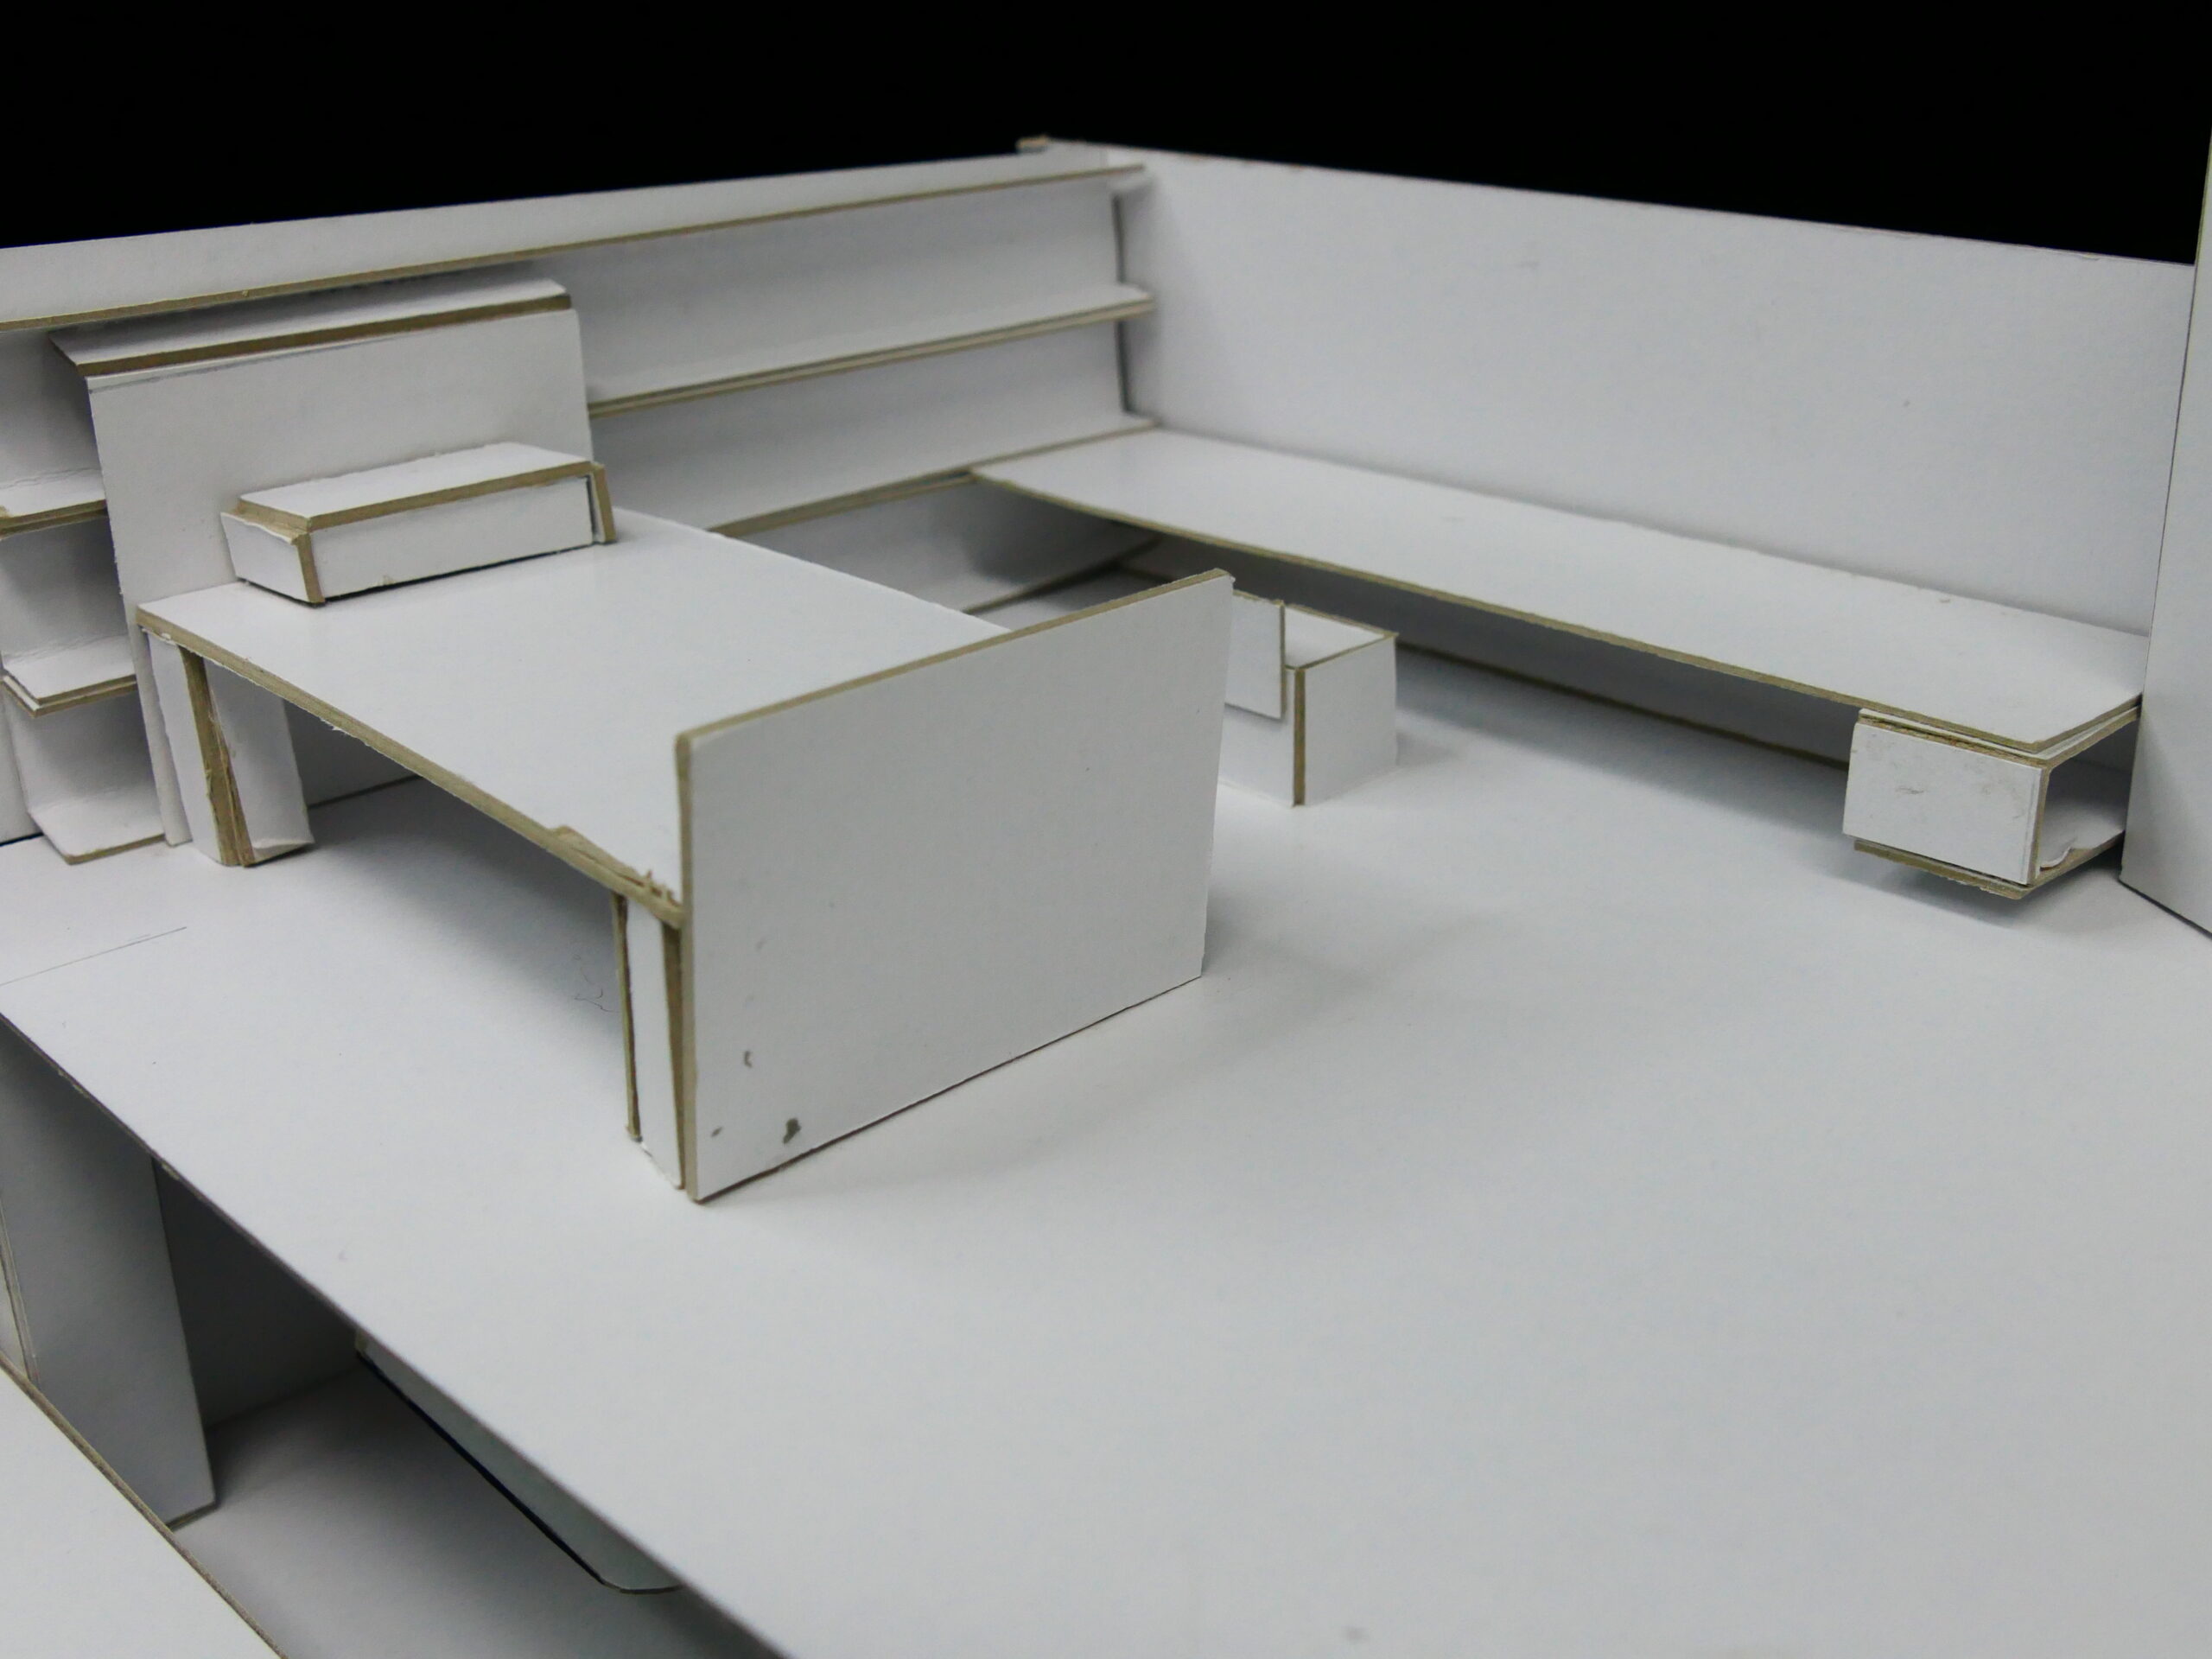 紙房子模型-04